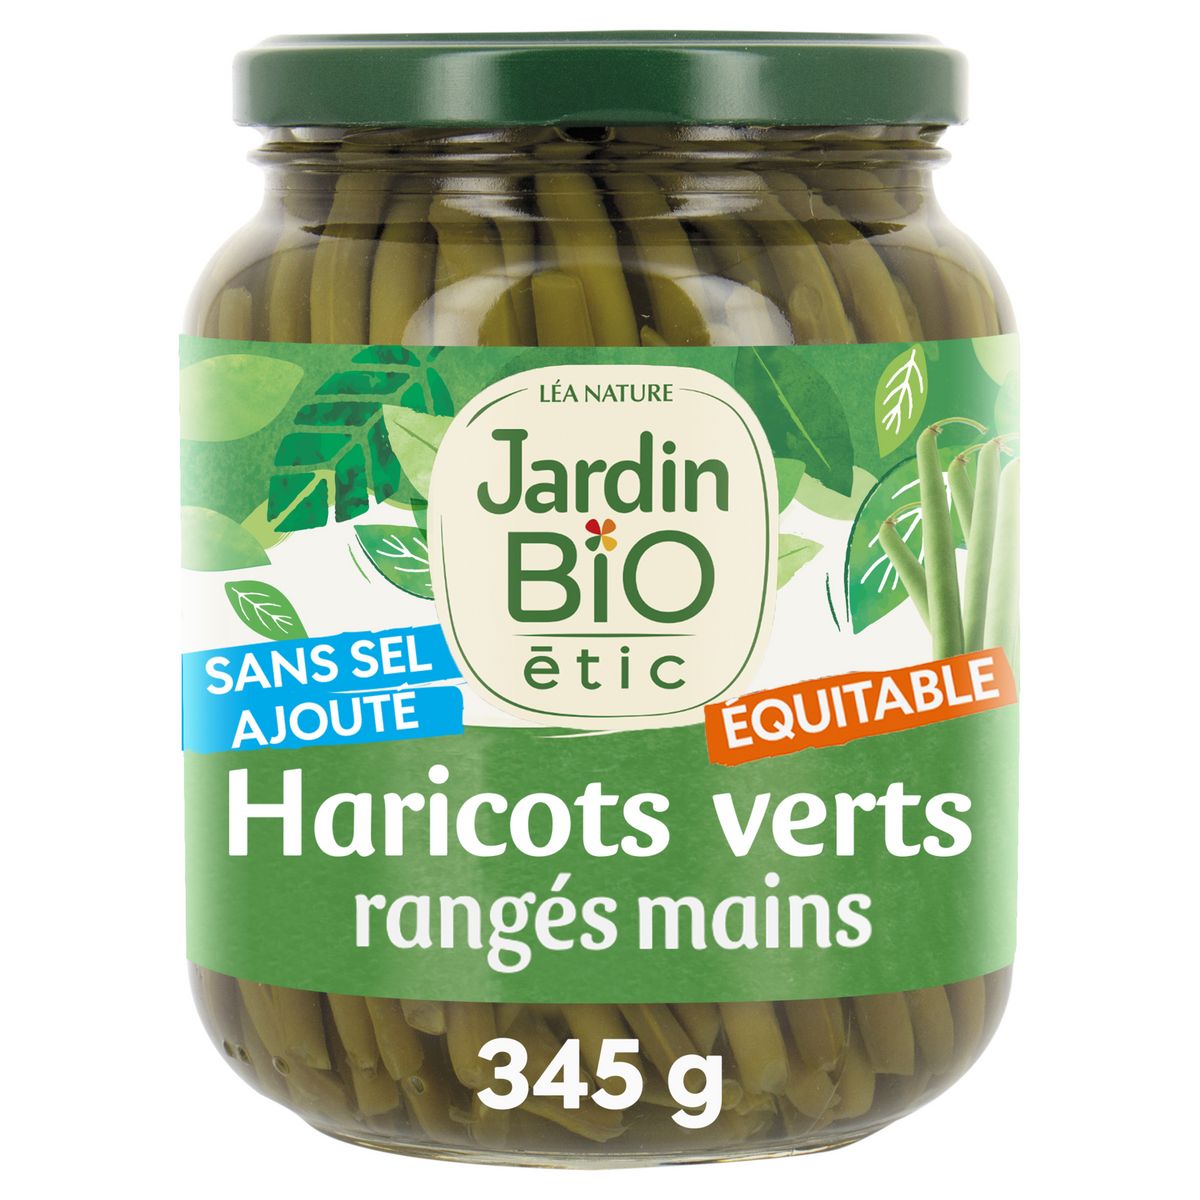 JARDIN BIO ETIC Haricots verts extra fins rangés main sans sel ajouté 660g